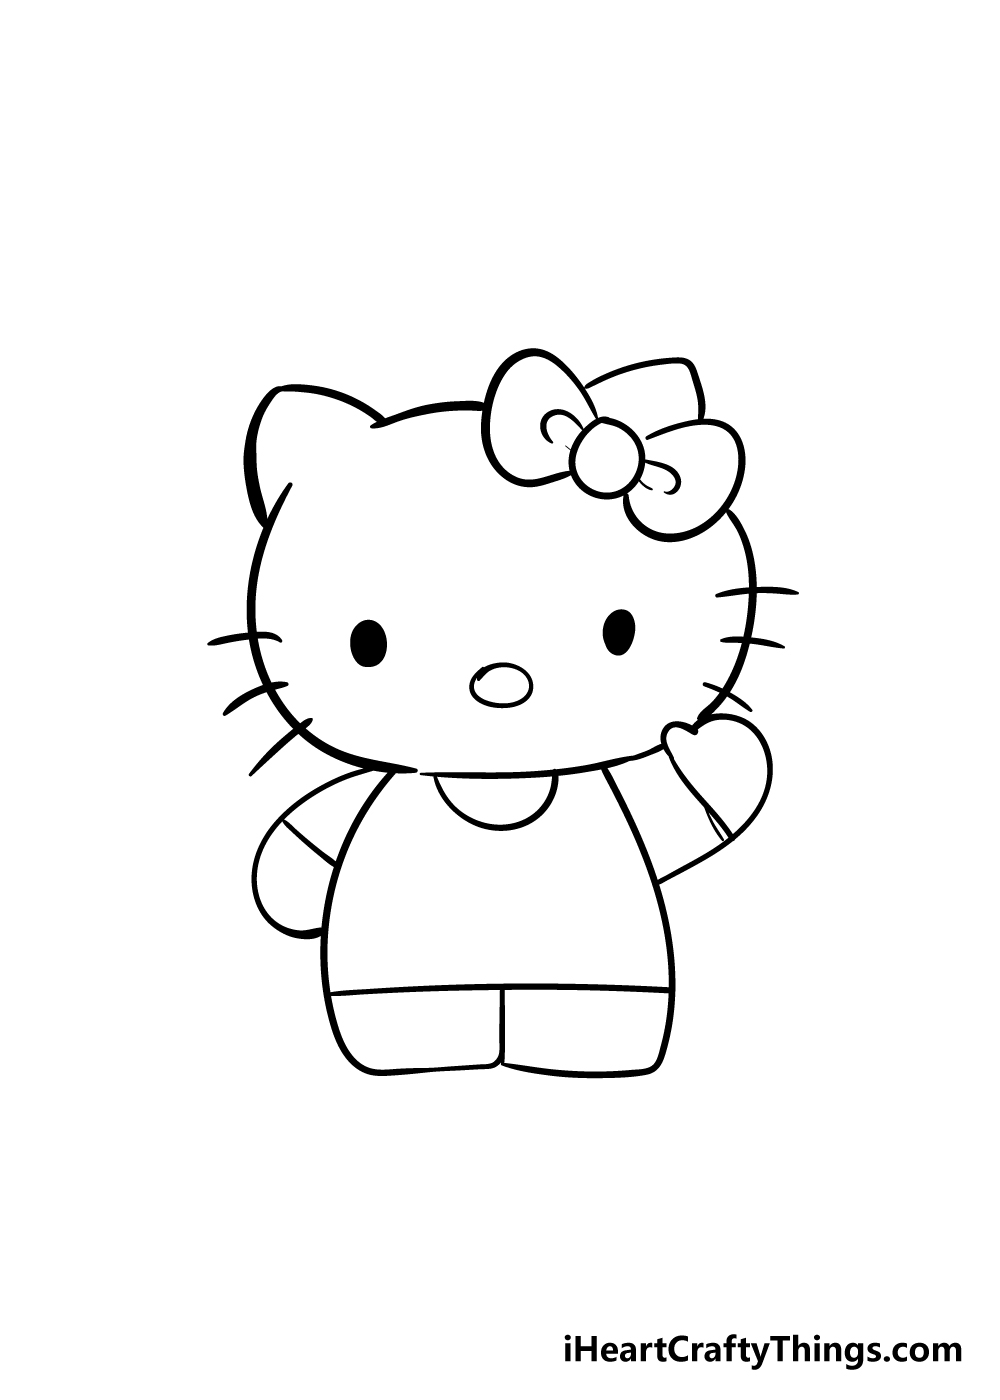 5 14 - Hướng dẫn cách vẽ hello kitty đơn giản với 6 bước cơ bản